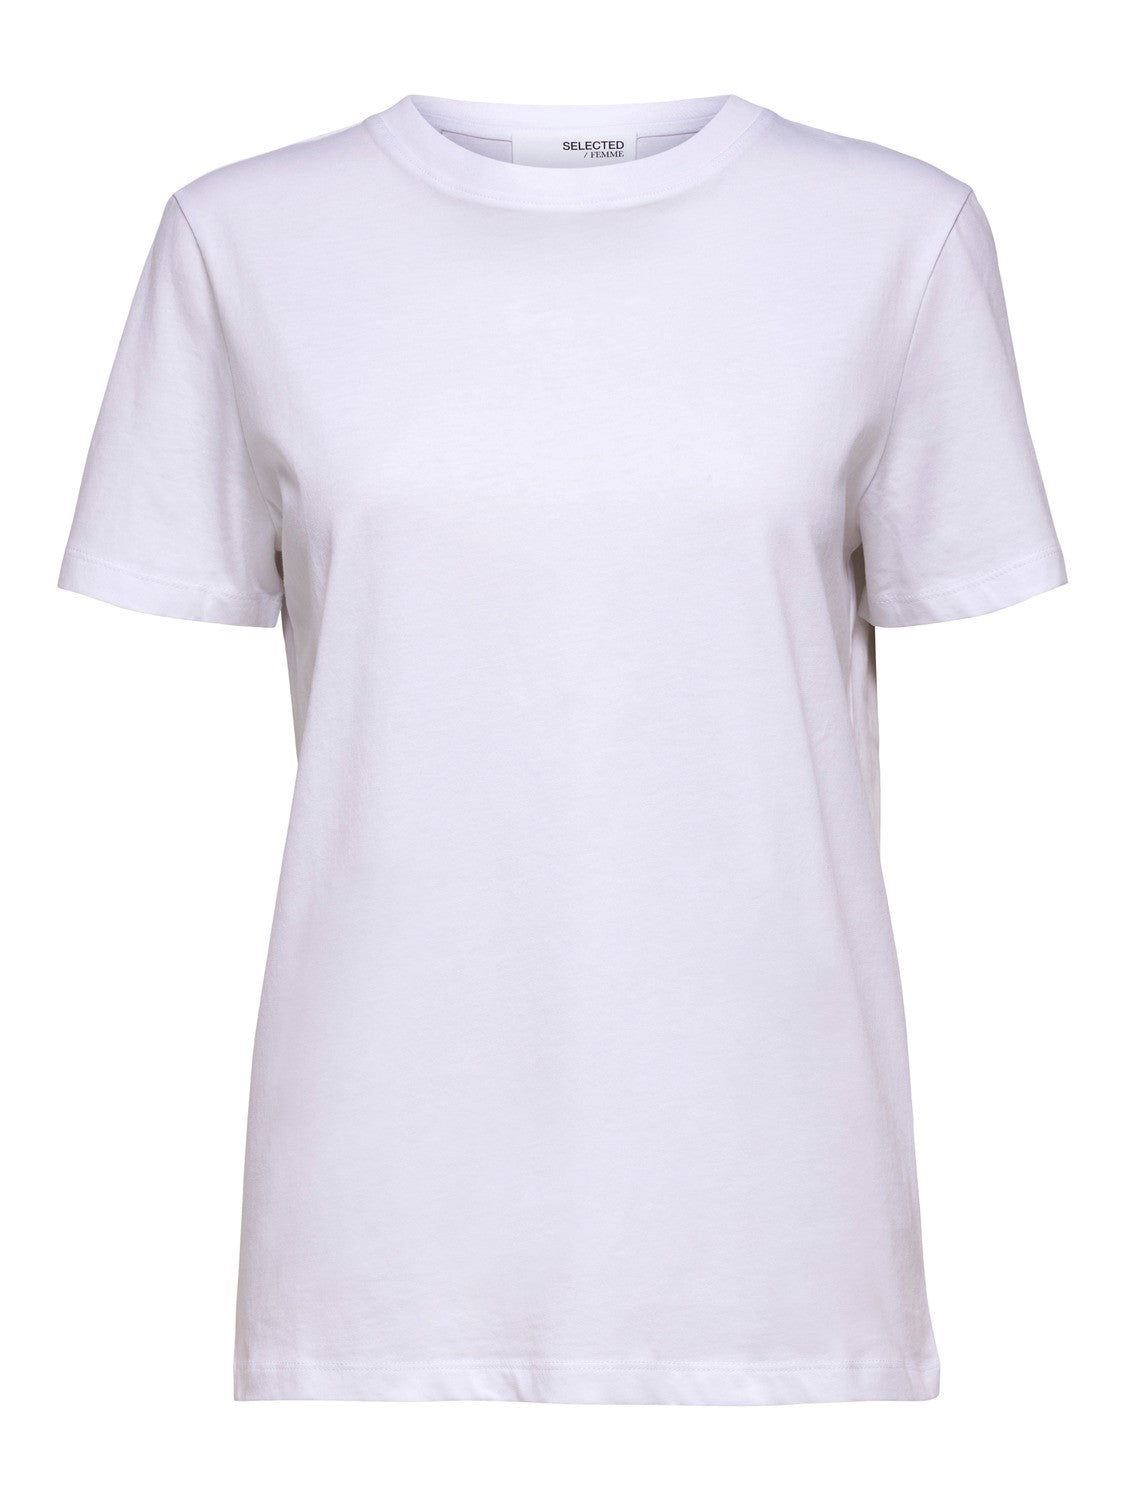 T-shirt Essential o-neck, bright white